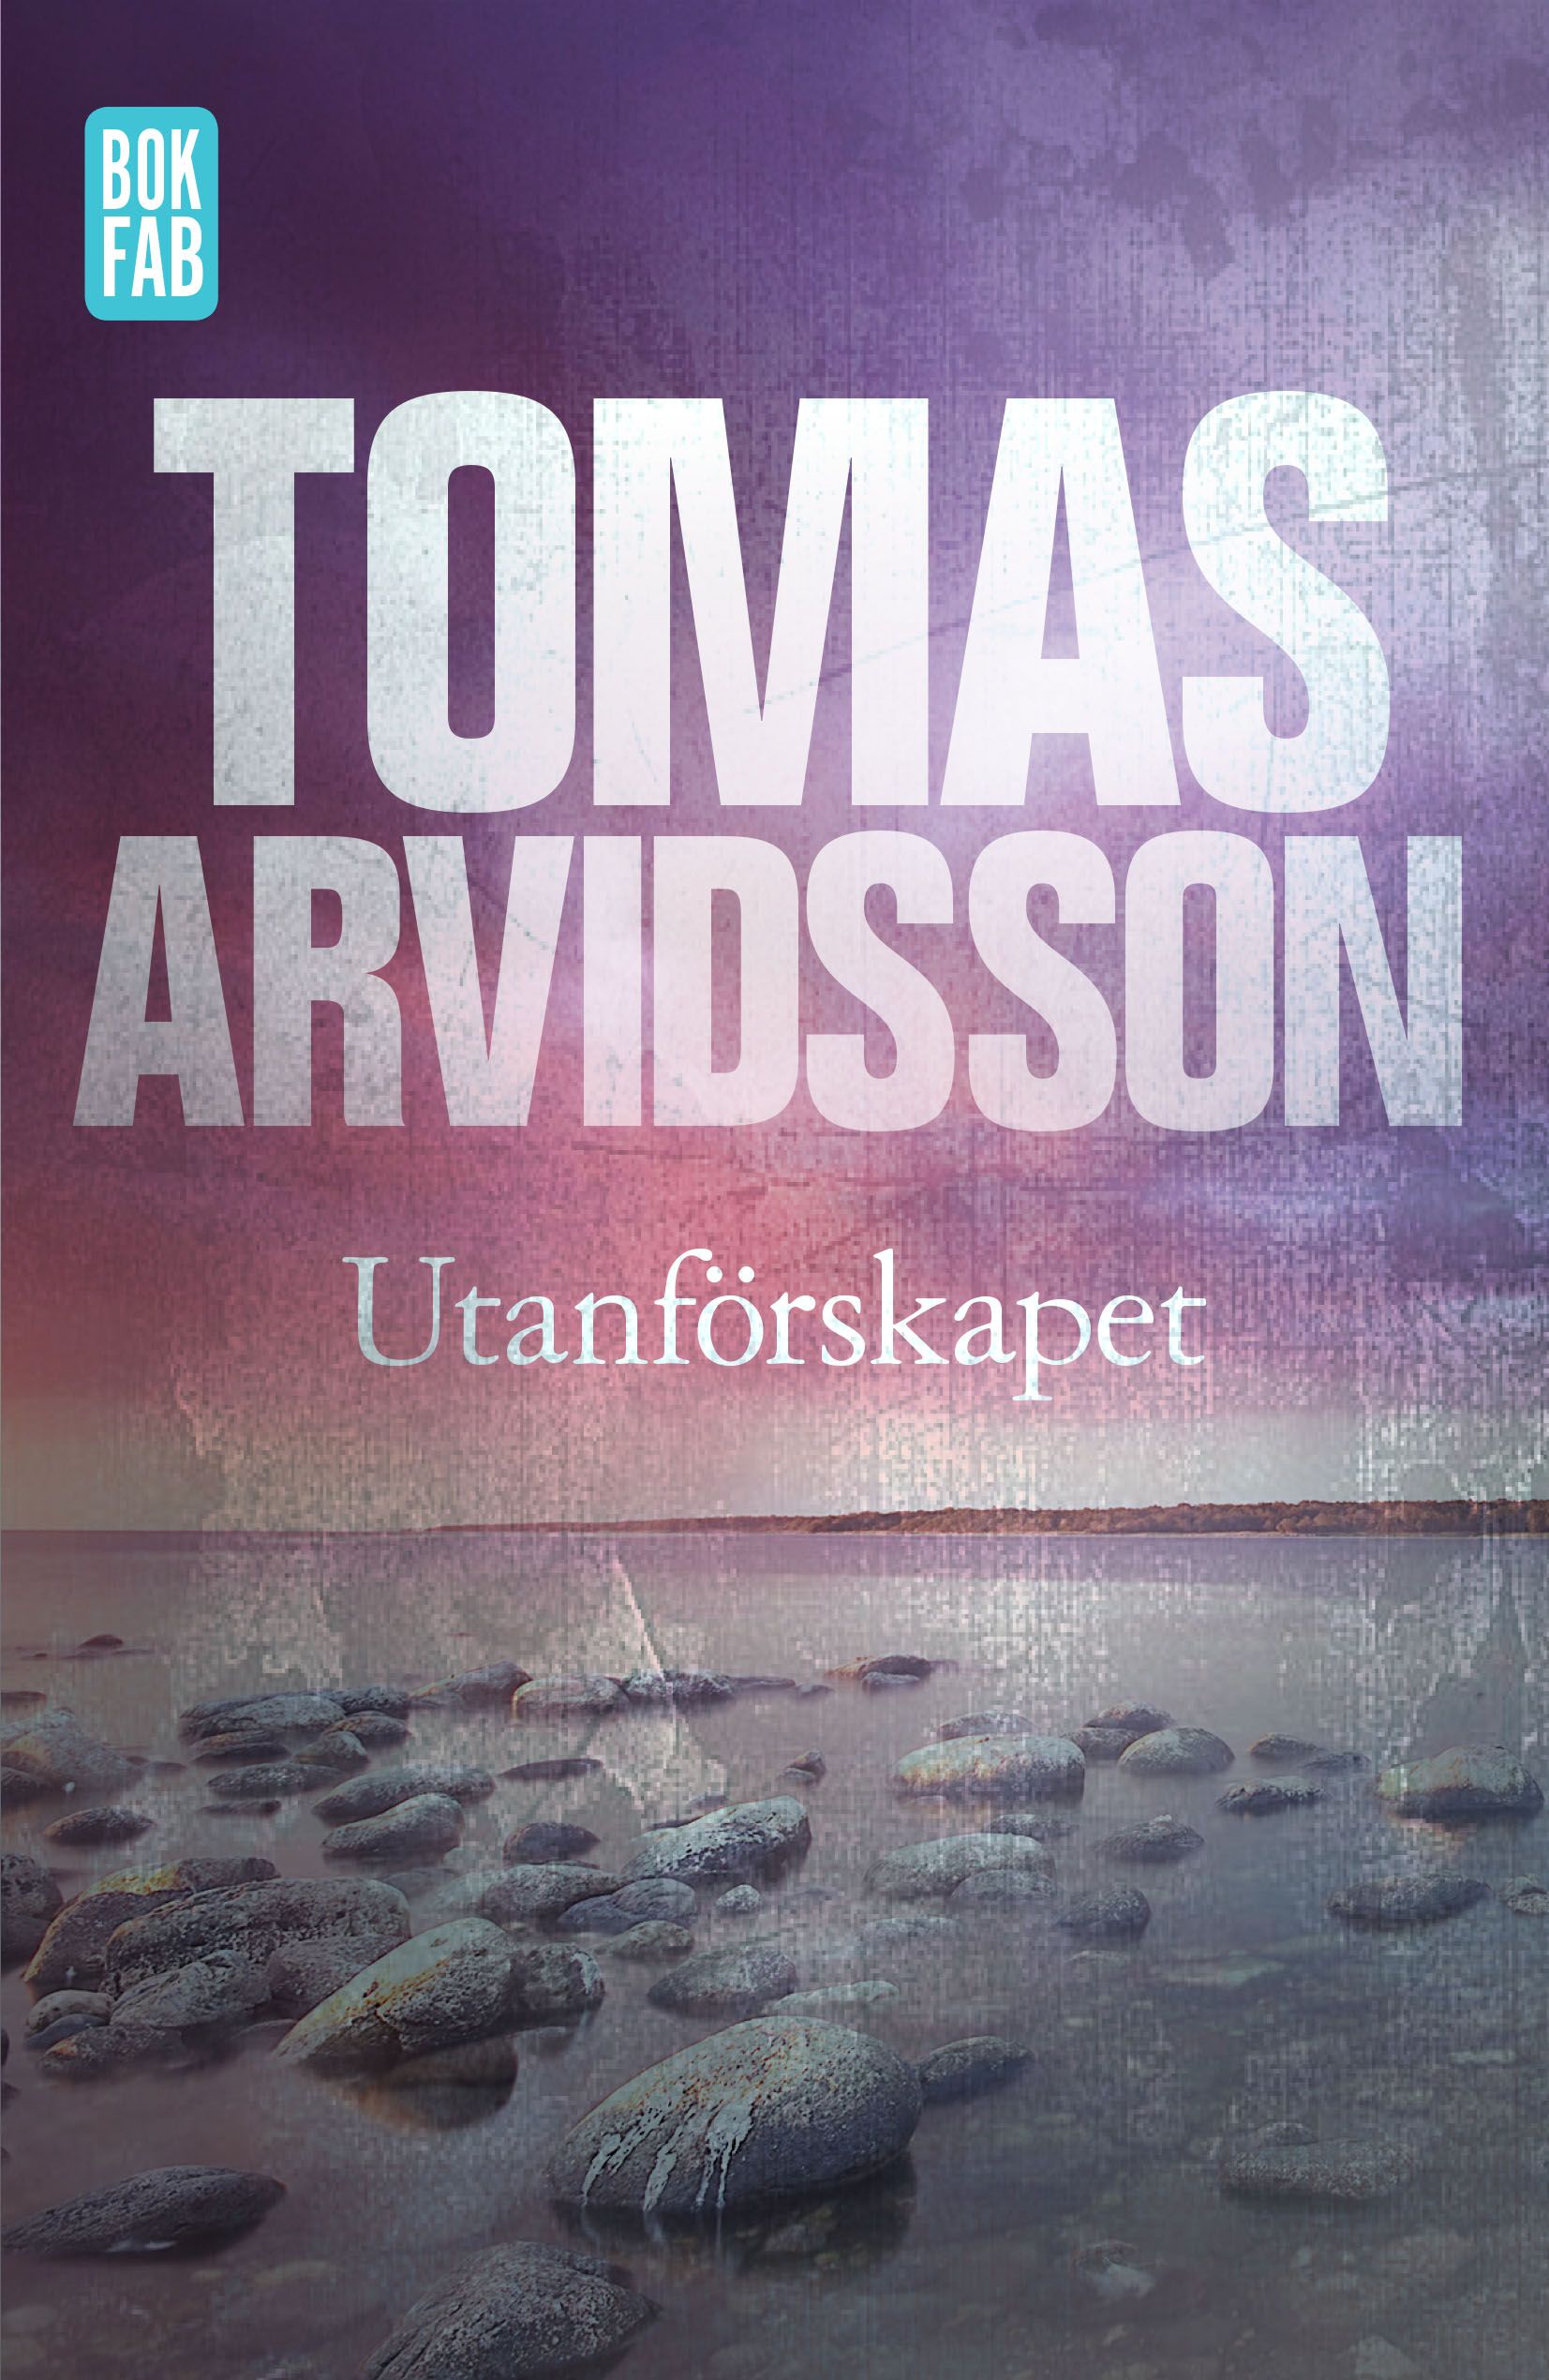 Utanförskapet, e-bok av Tomas Arvidsson